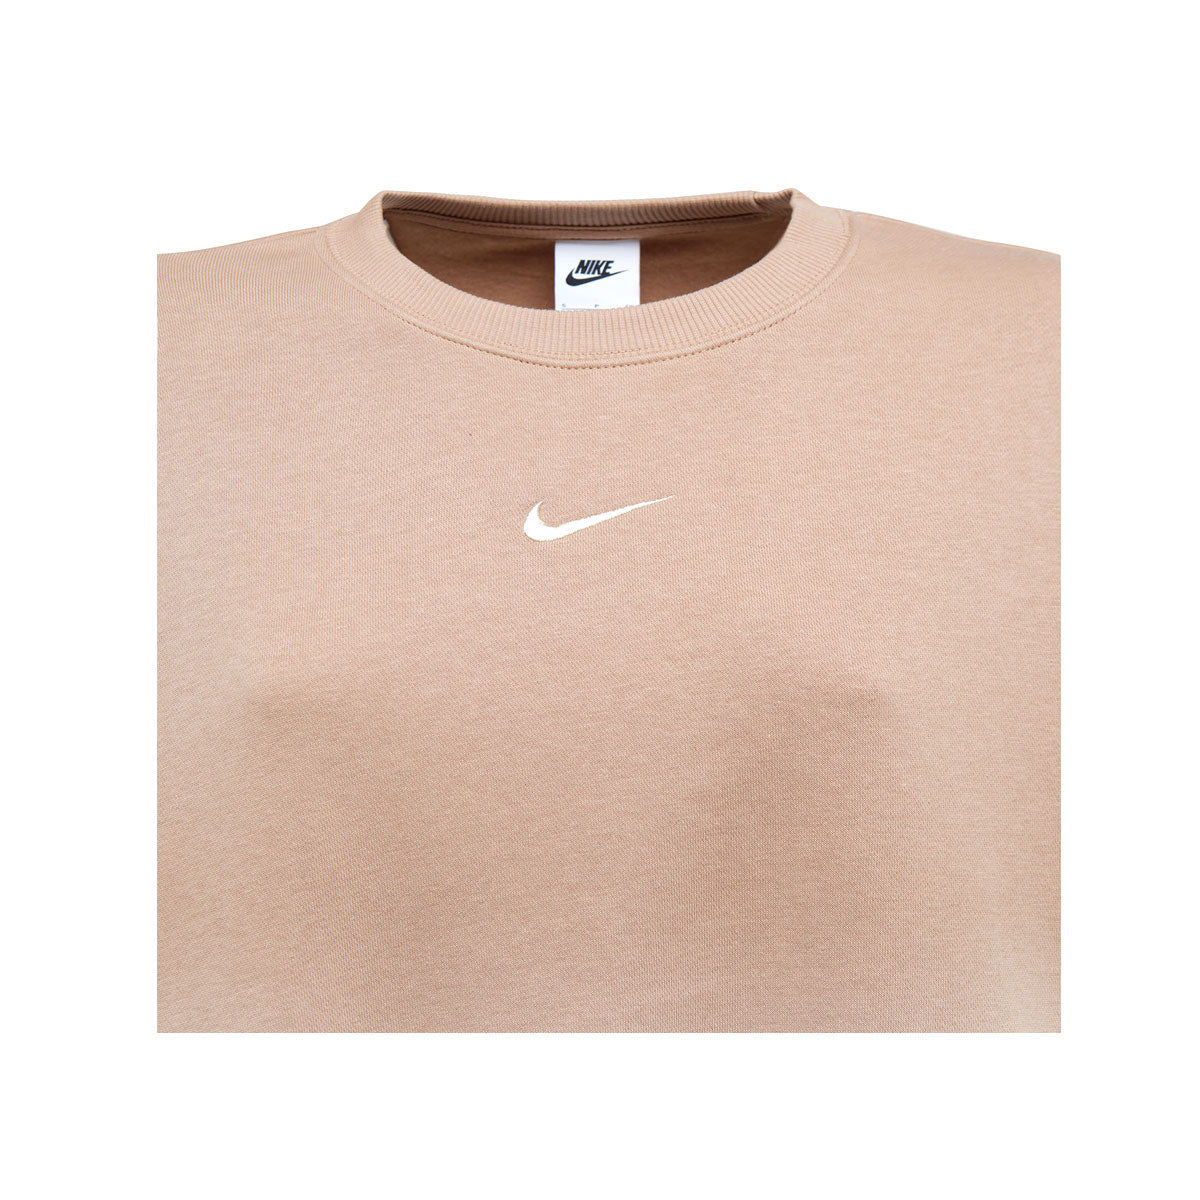 Nike Women's Fleece Oversized Crewneck Sweatshirt